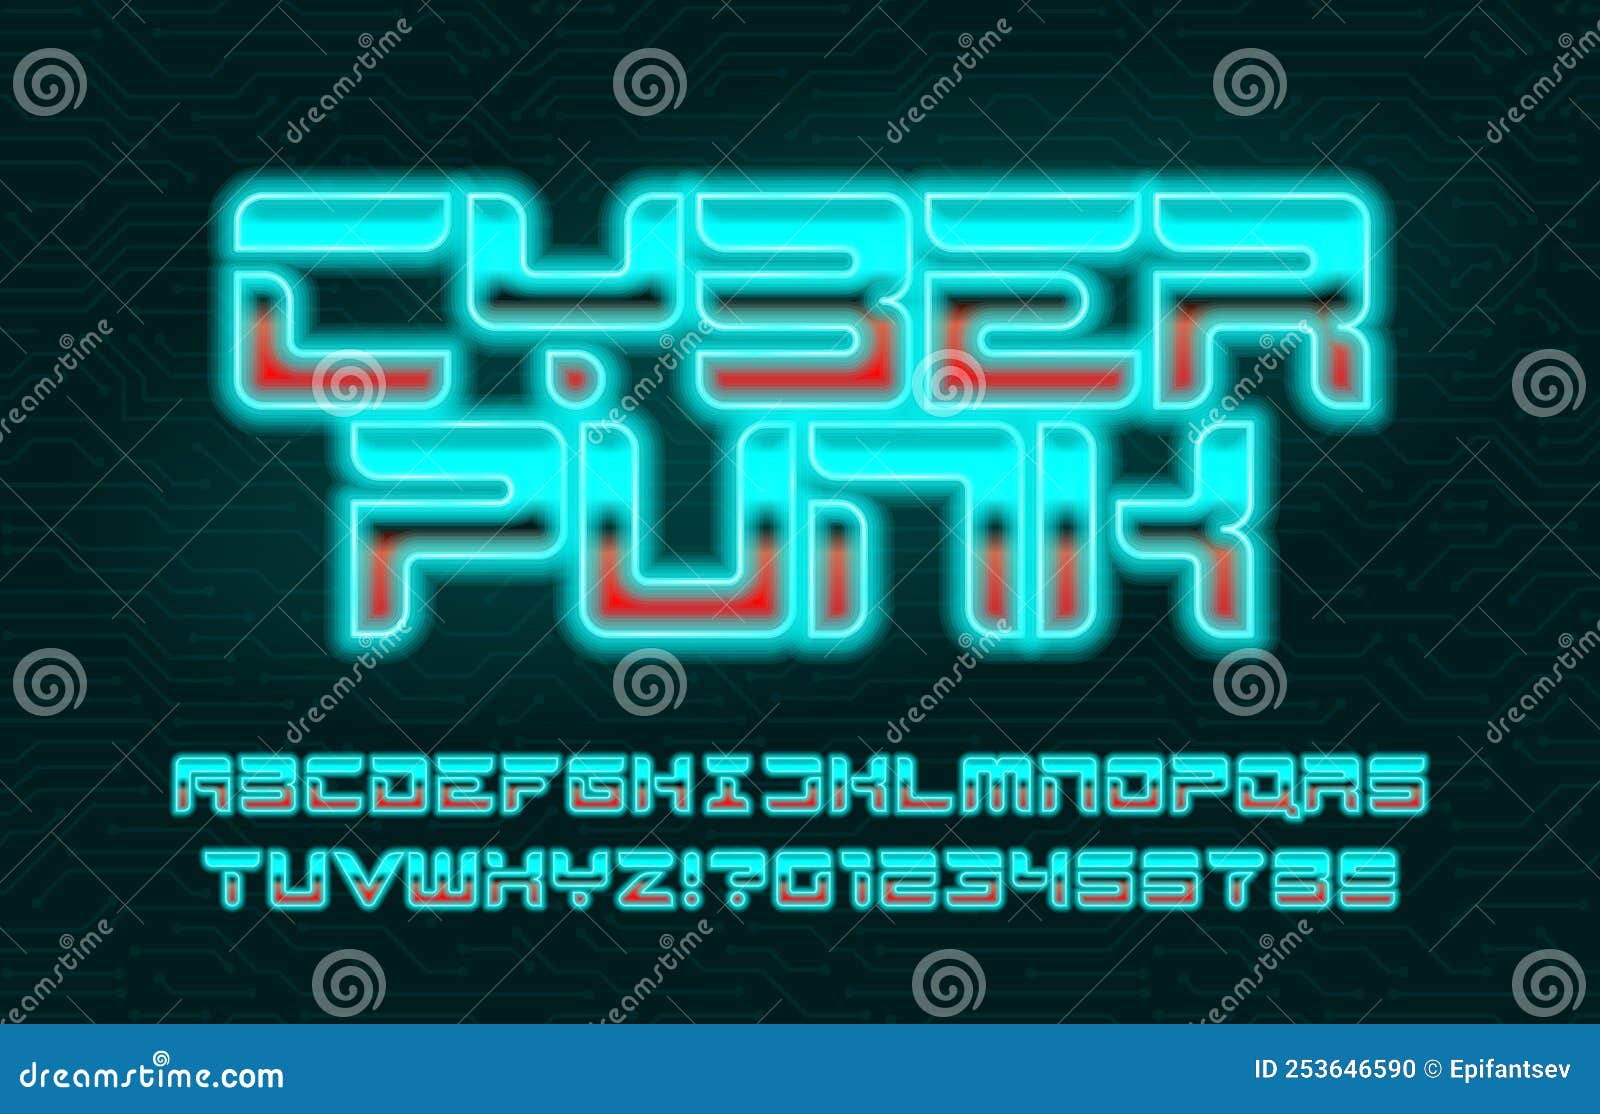 Cyberpunk fonts free фото 64